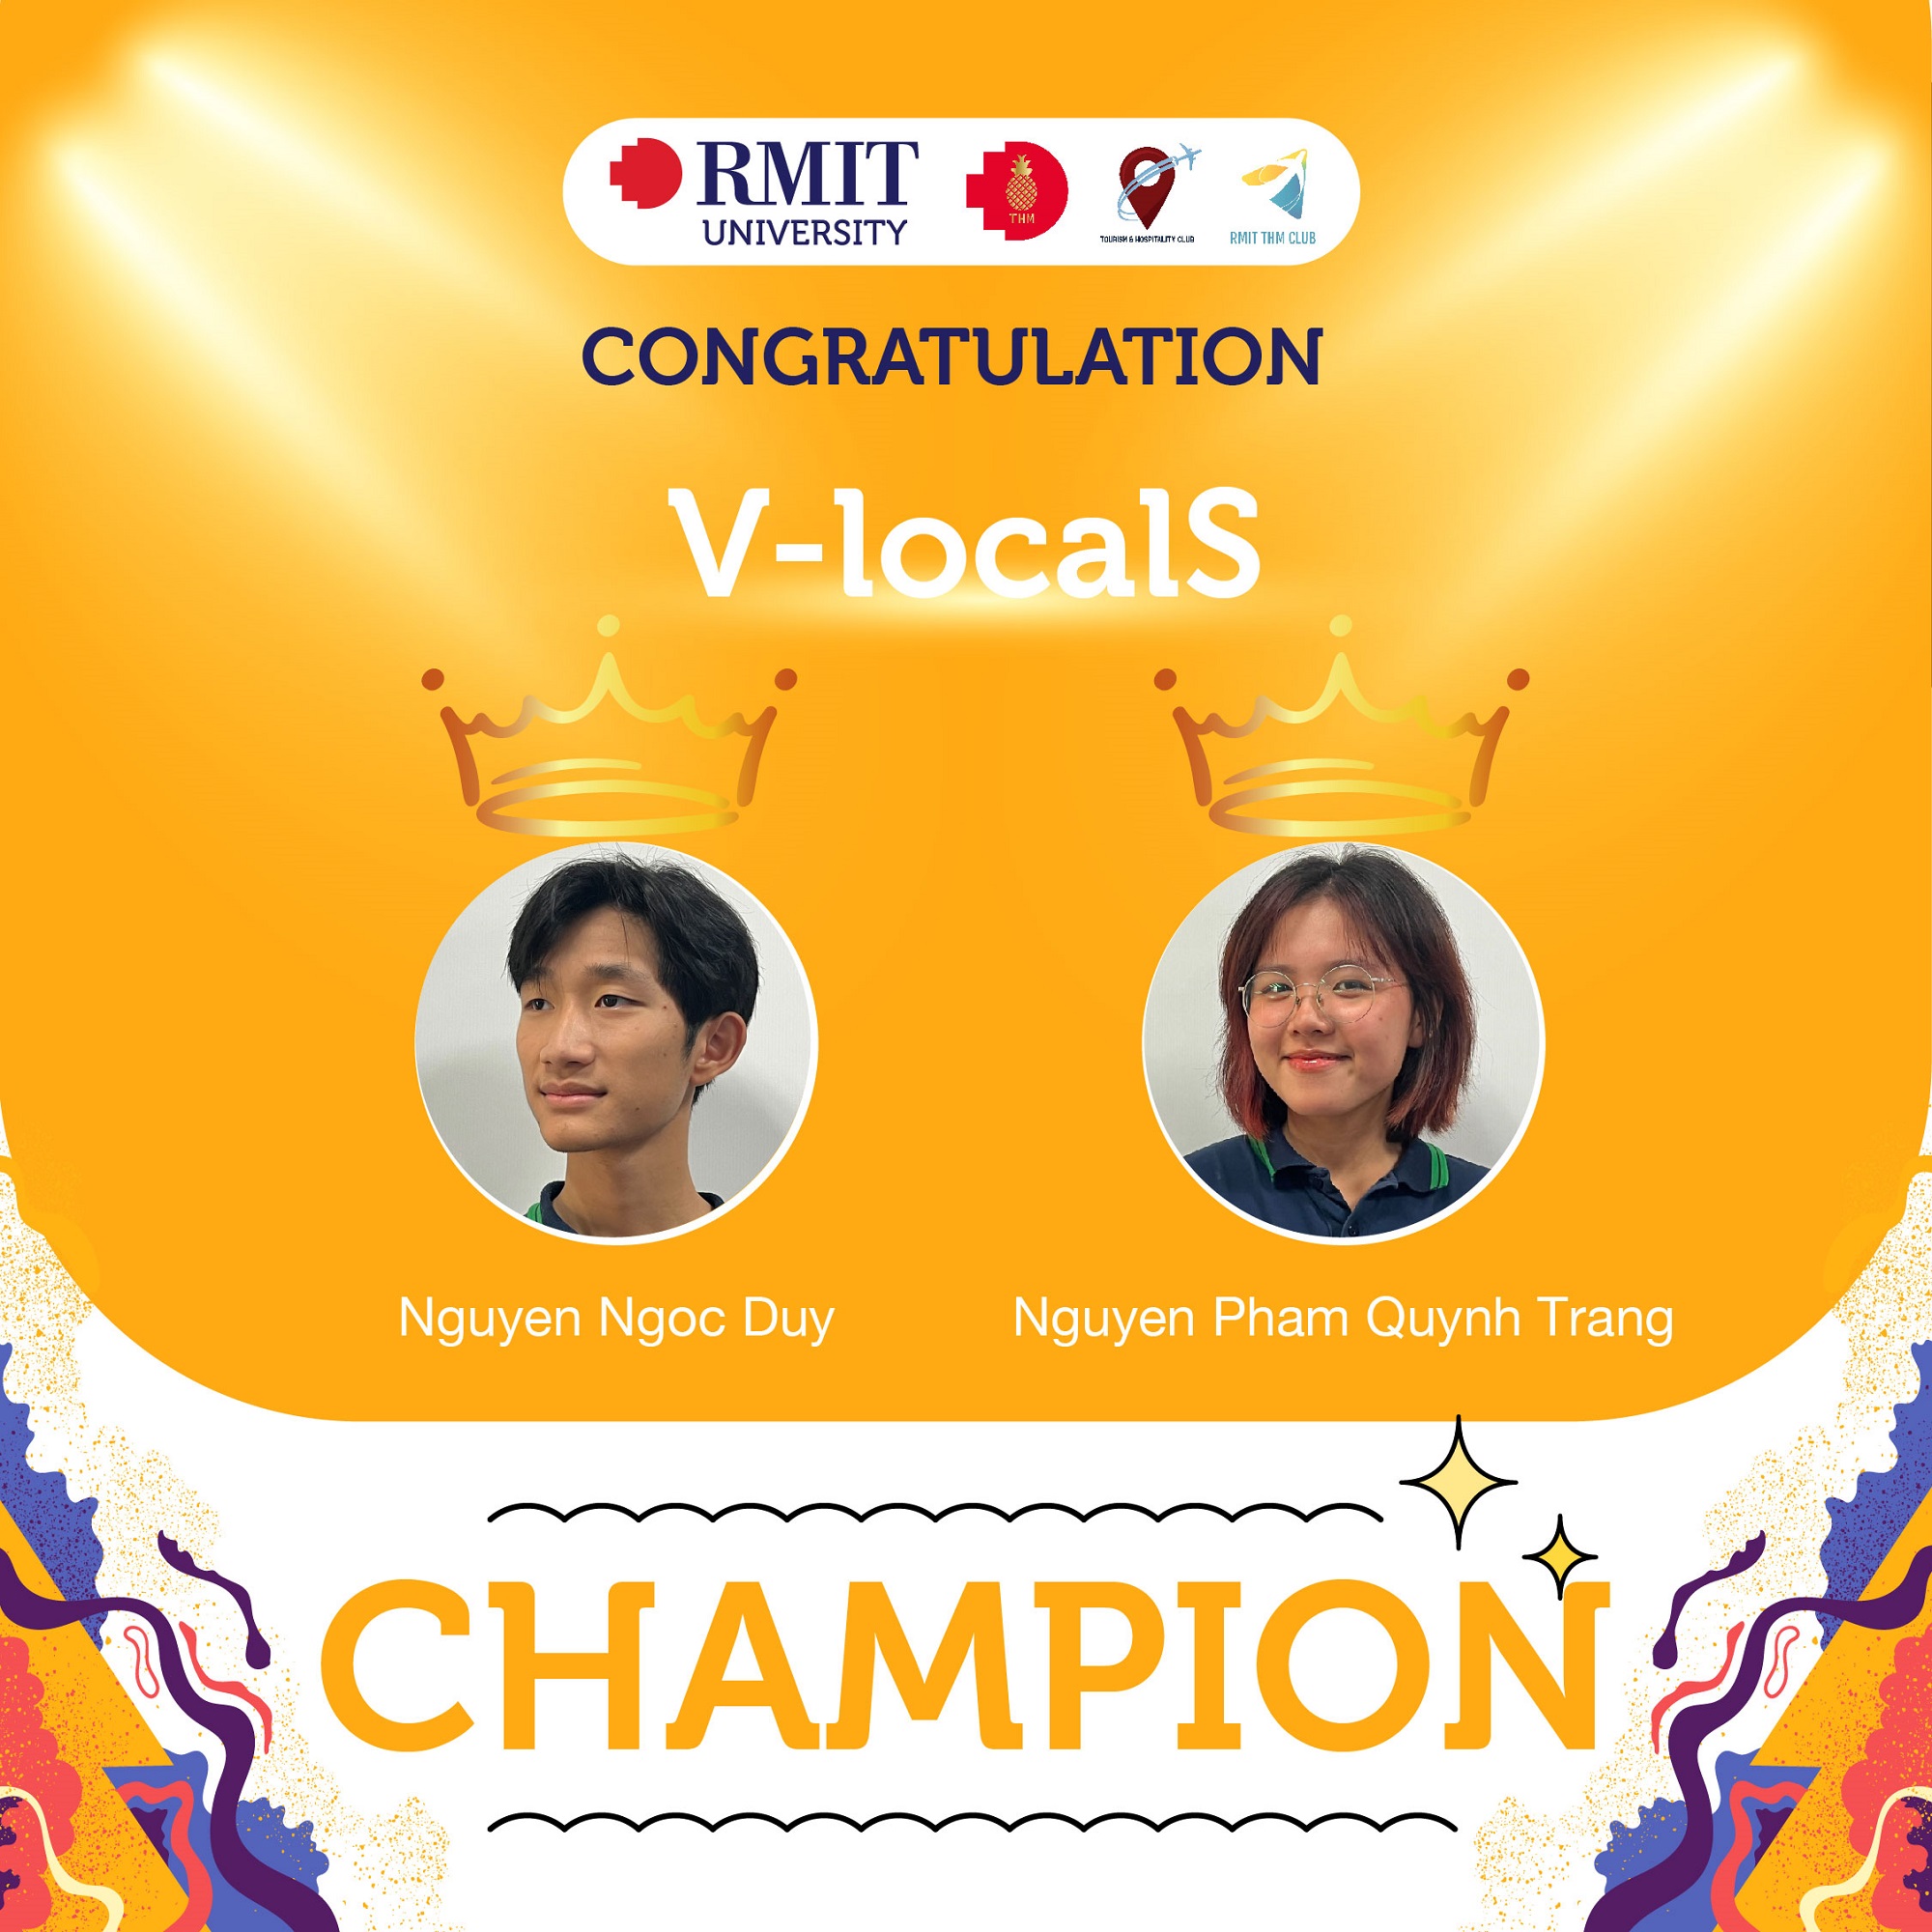  Nguyễn Ngọc Duy và Nguyễn Phạm Quỳnh Trang đến từ trường THPT FPT (Hà Nội) đã giành giải Nhất.